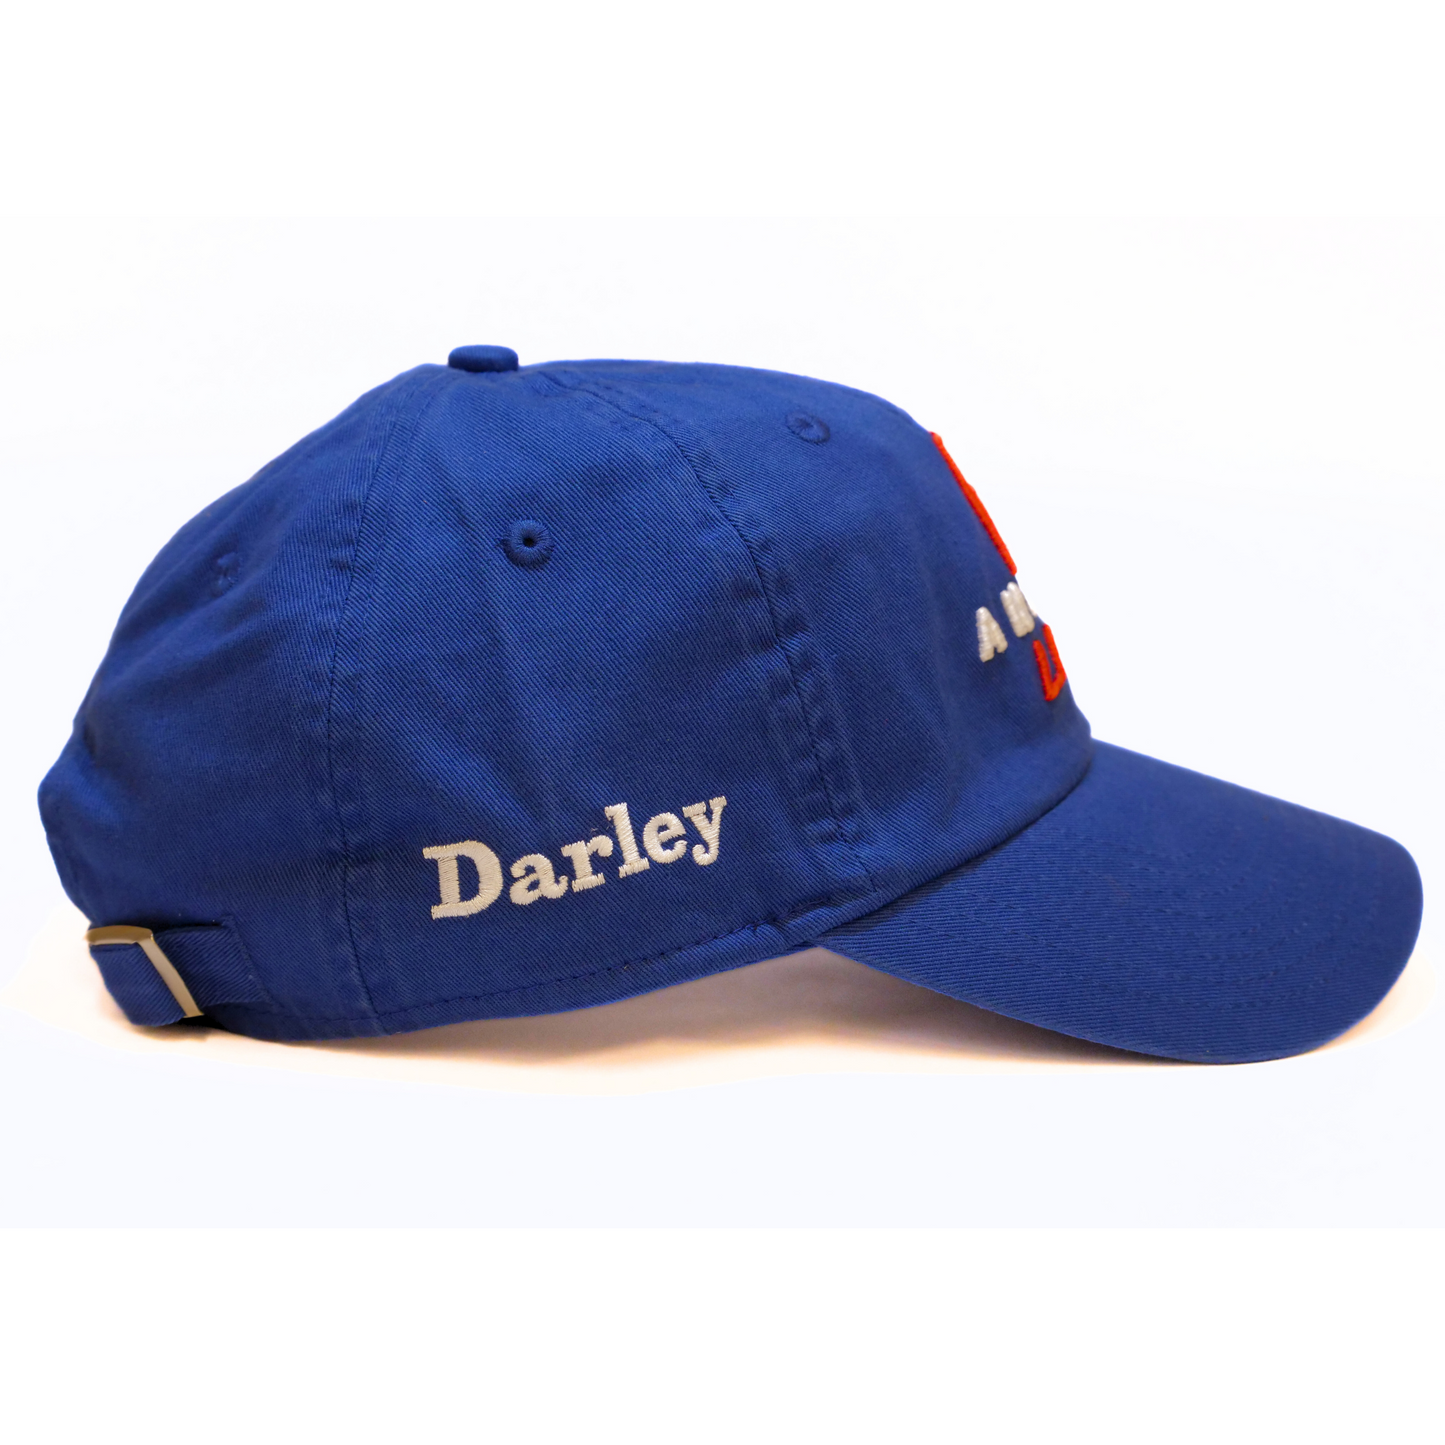 Anamoe Baseball Cap - Darley